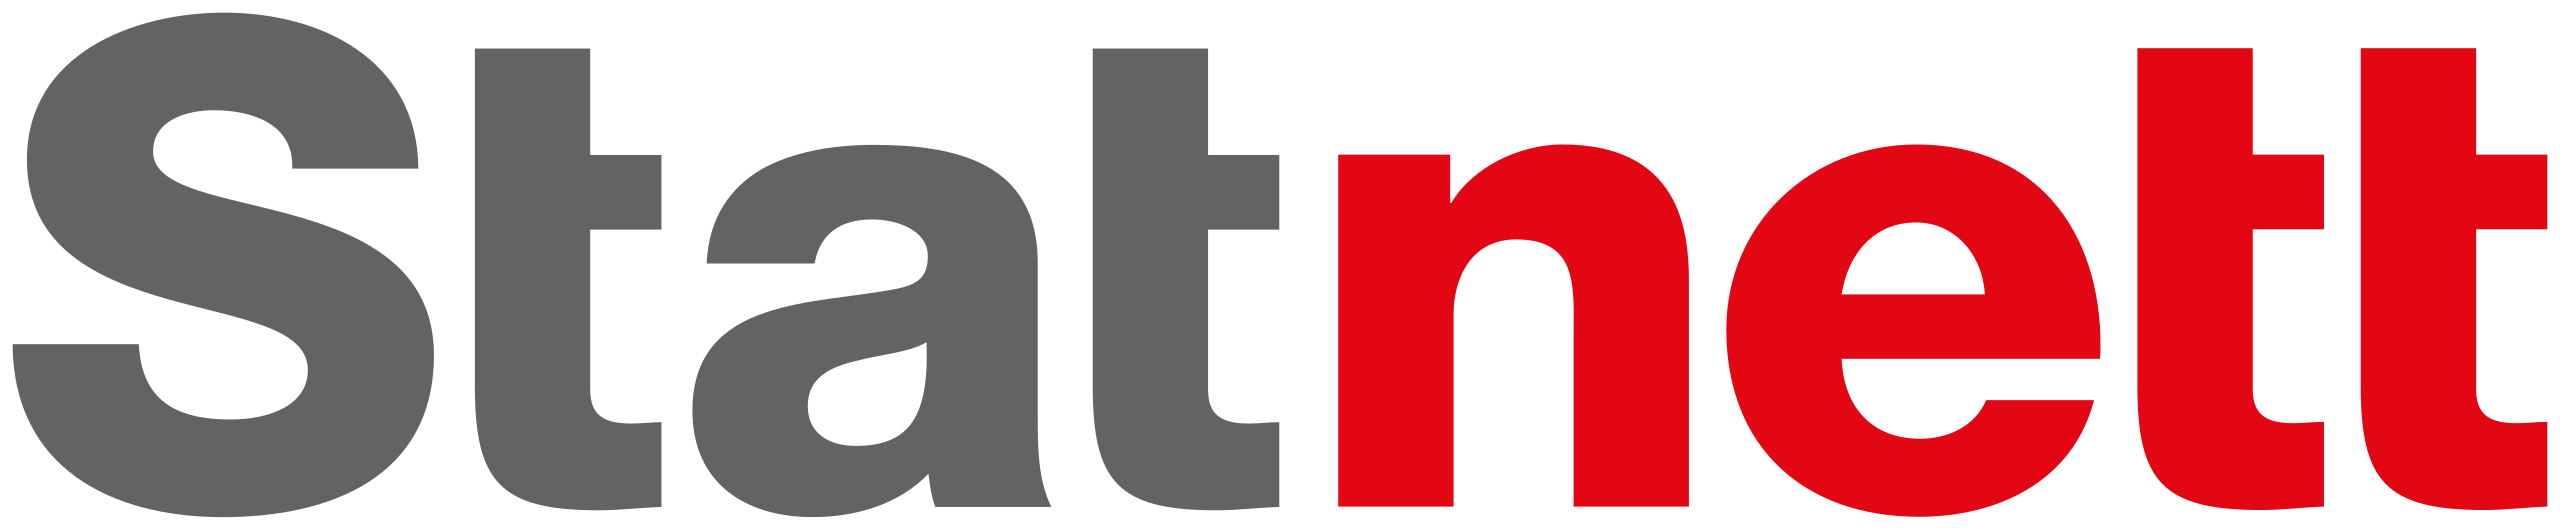 Statnett_logo.svg